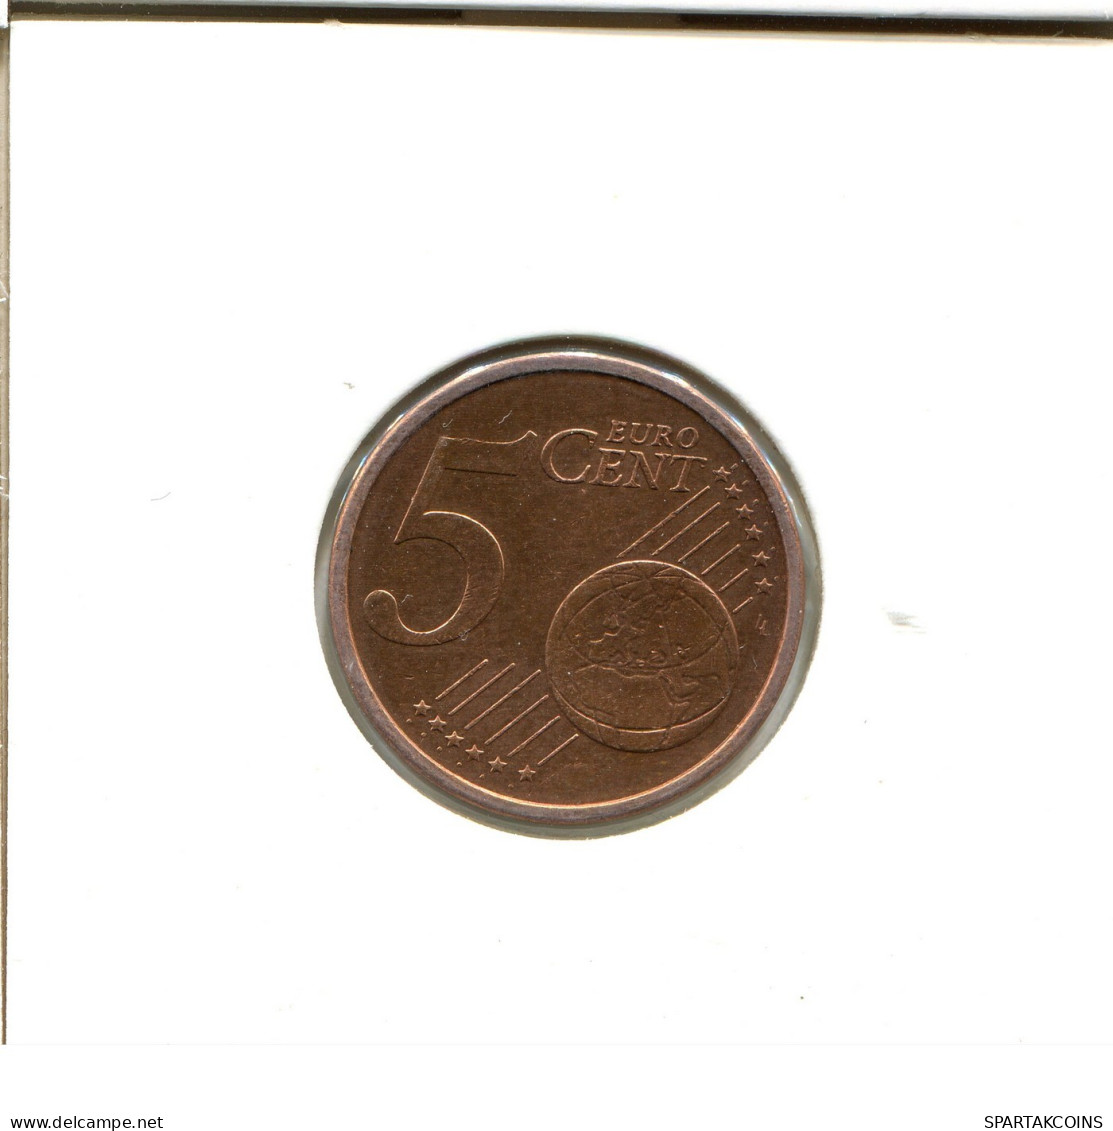 5 EURO CENTS 2004 ALEMANIA Moneda GERMANY #EU475.E.A - Germany